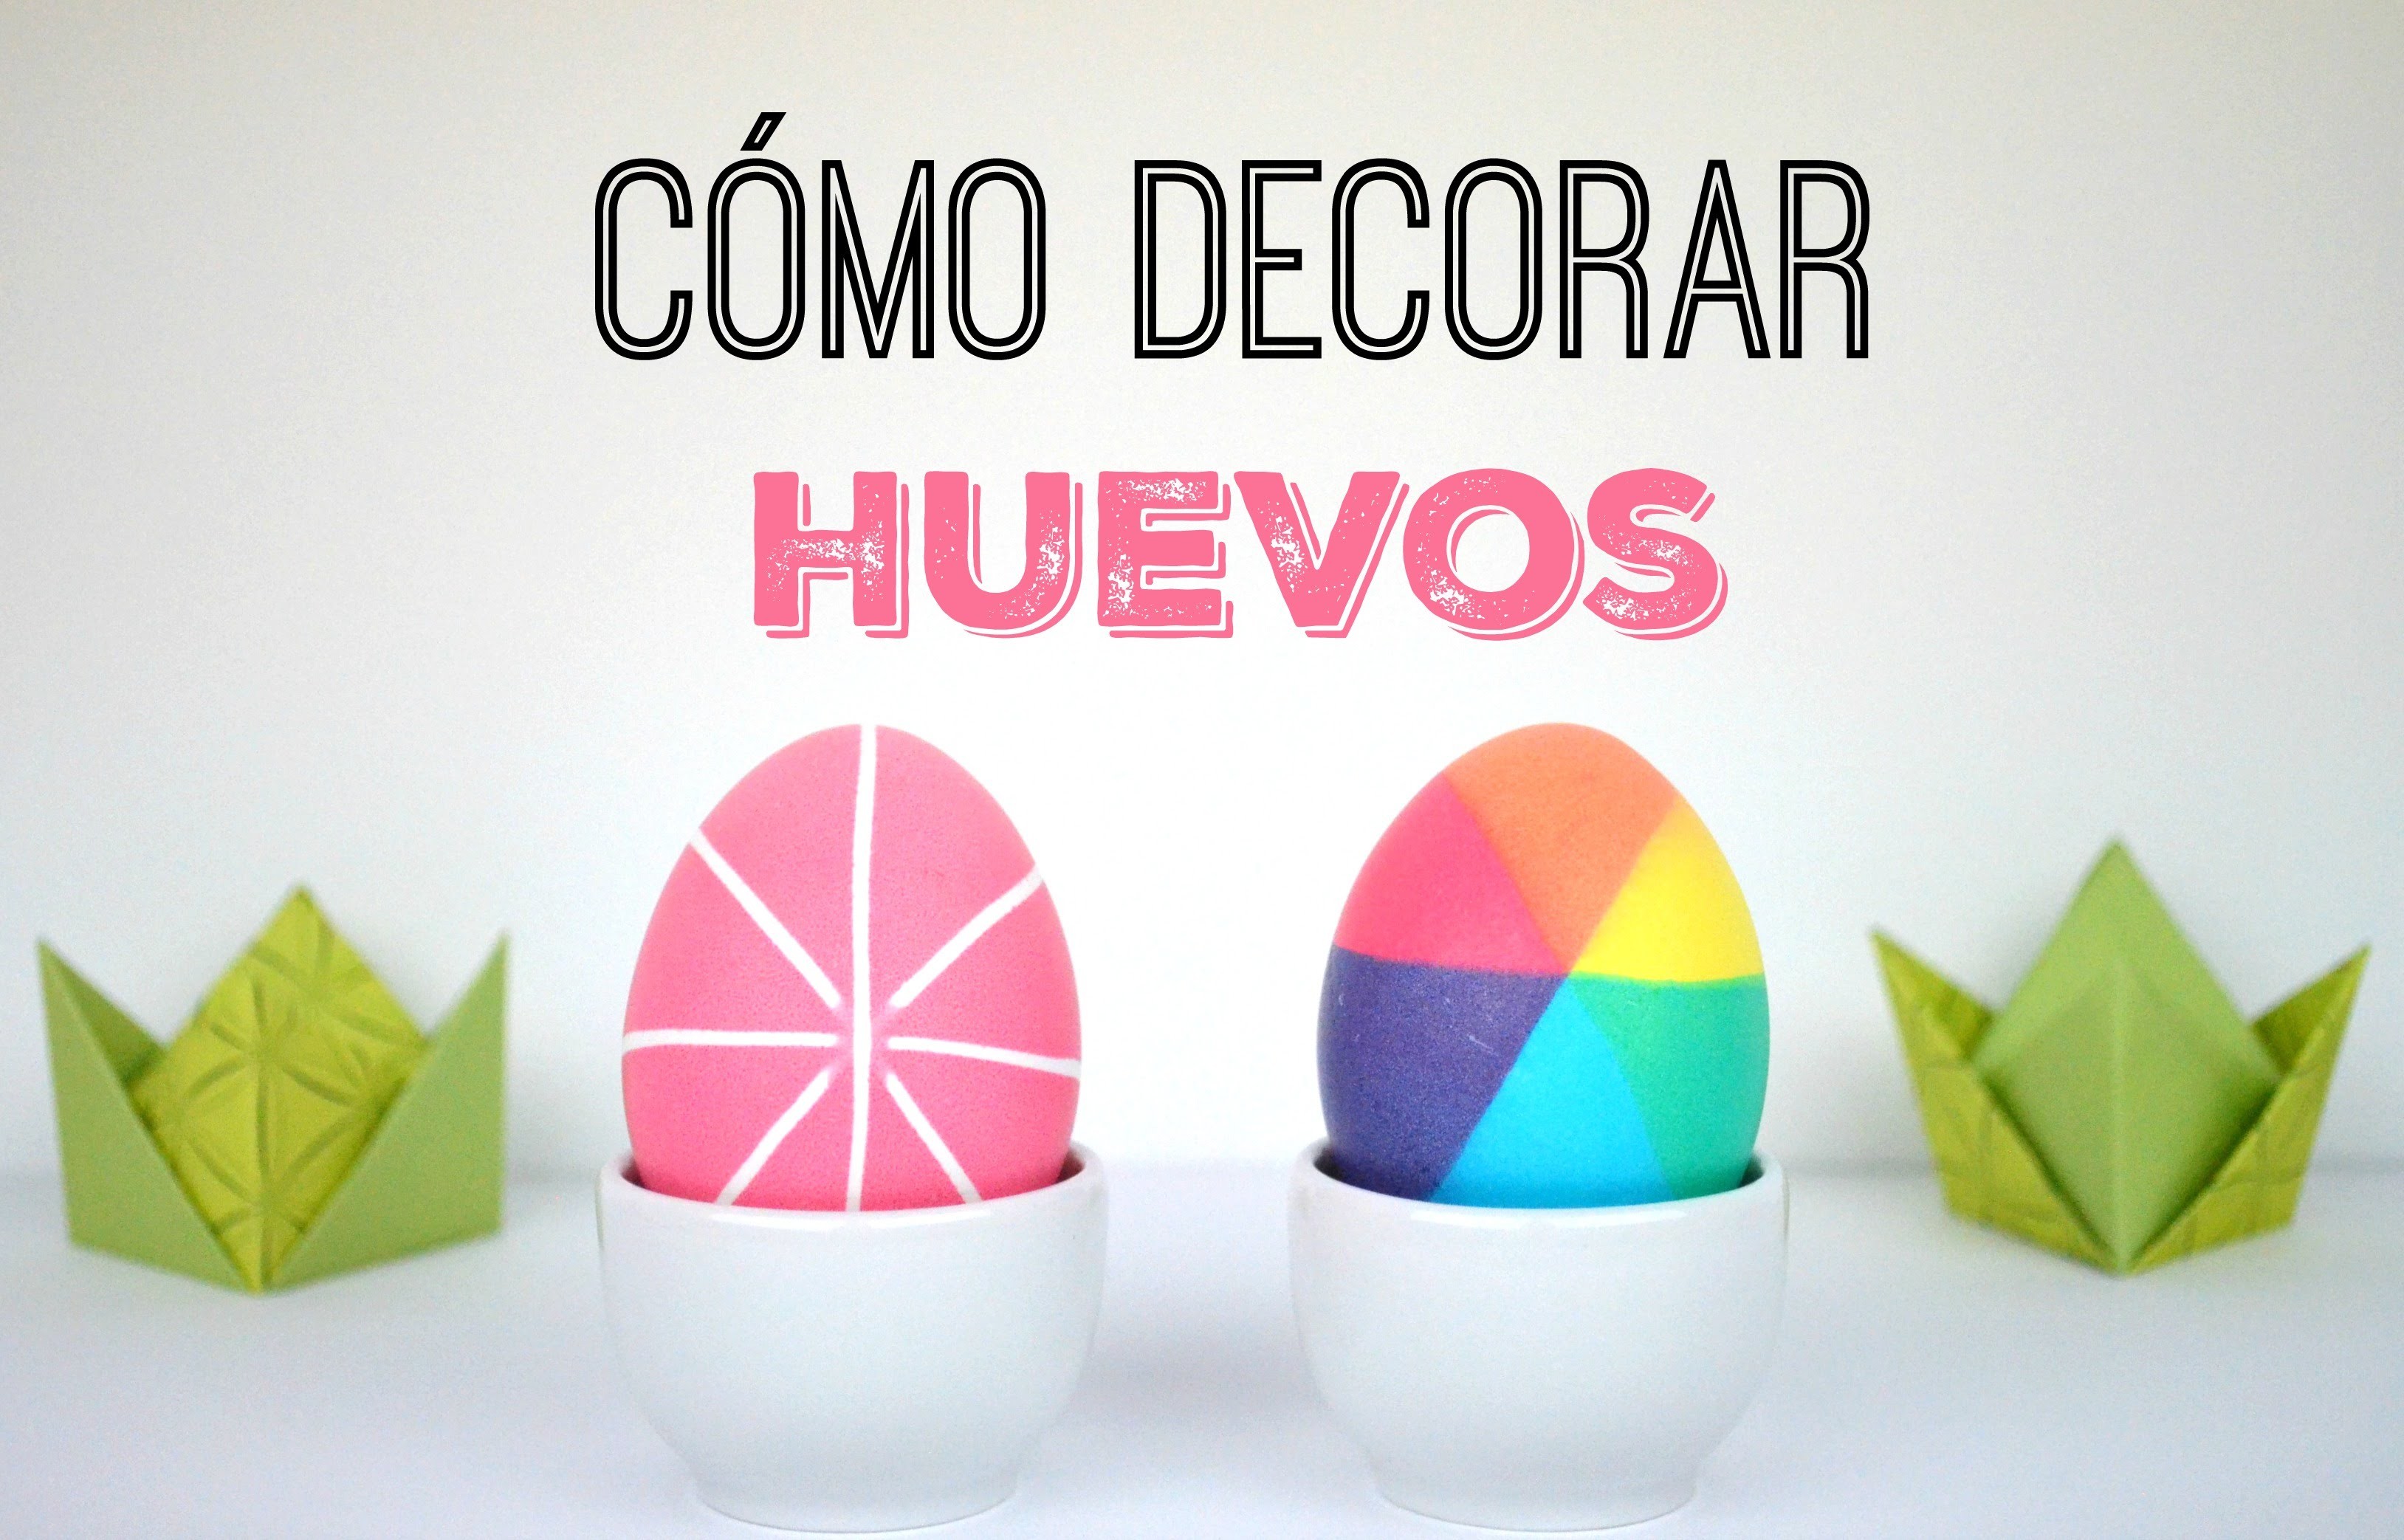 Cómo decorar huevos de Pascua con colorantes alimentarios | DIY | How to decorate Easter Eggs